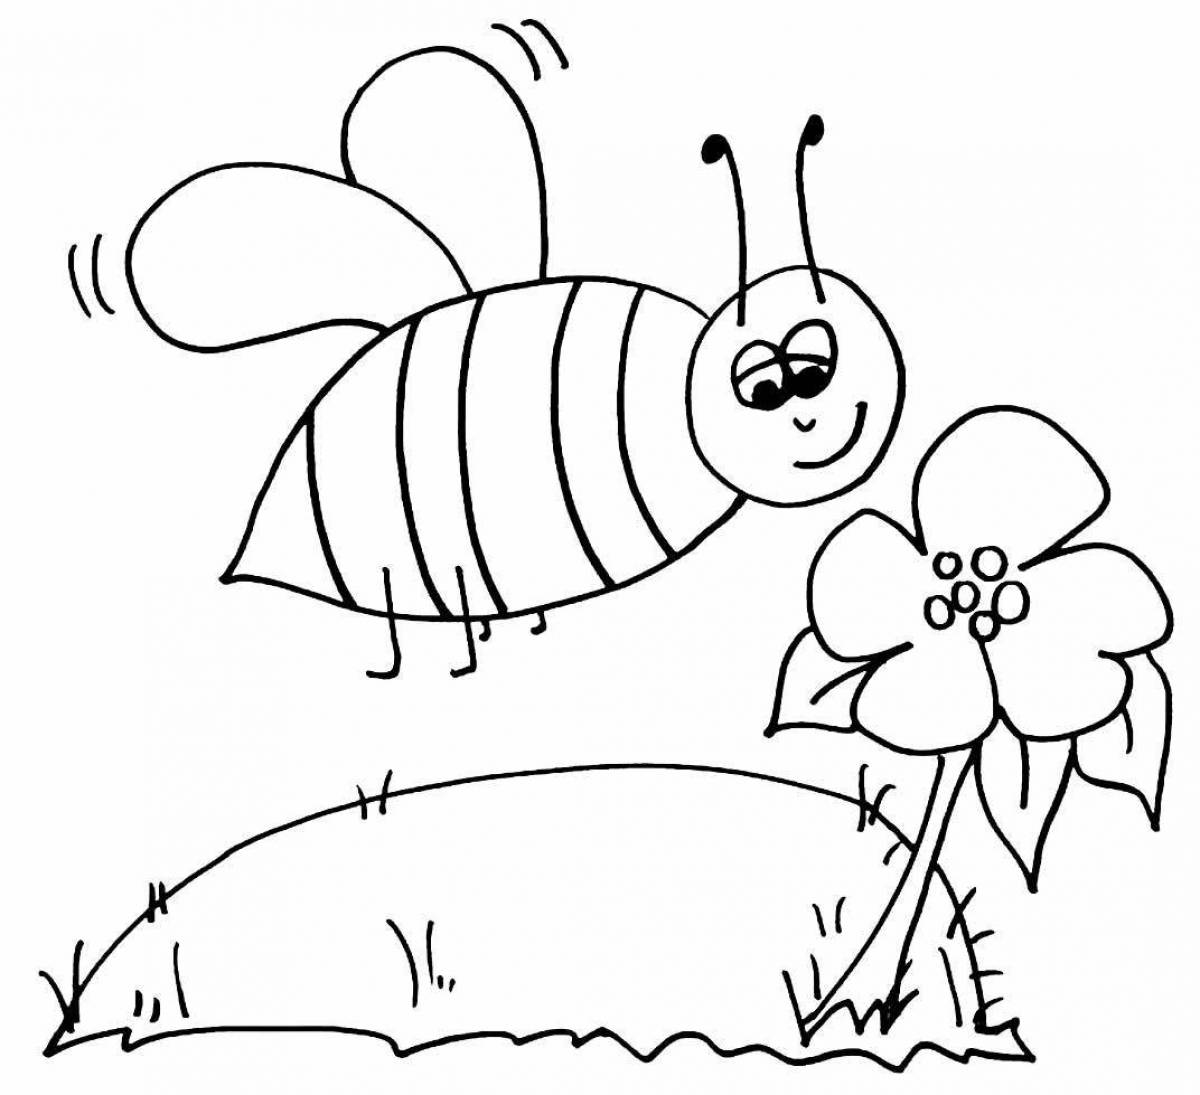 Яркая пчела-раскраска для детей